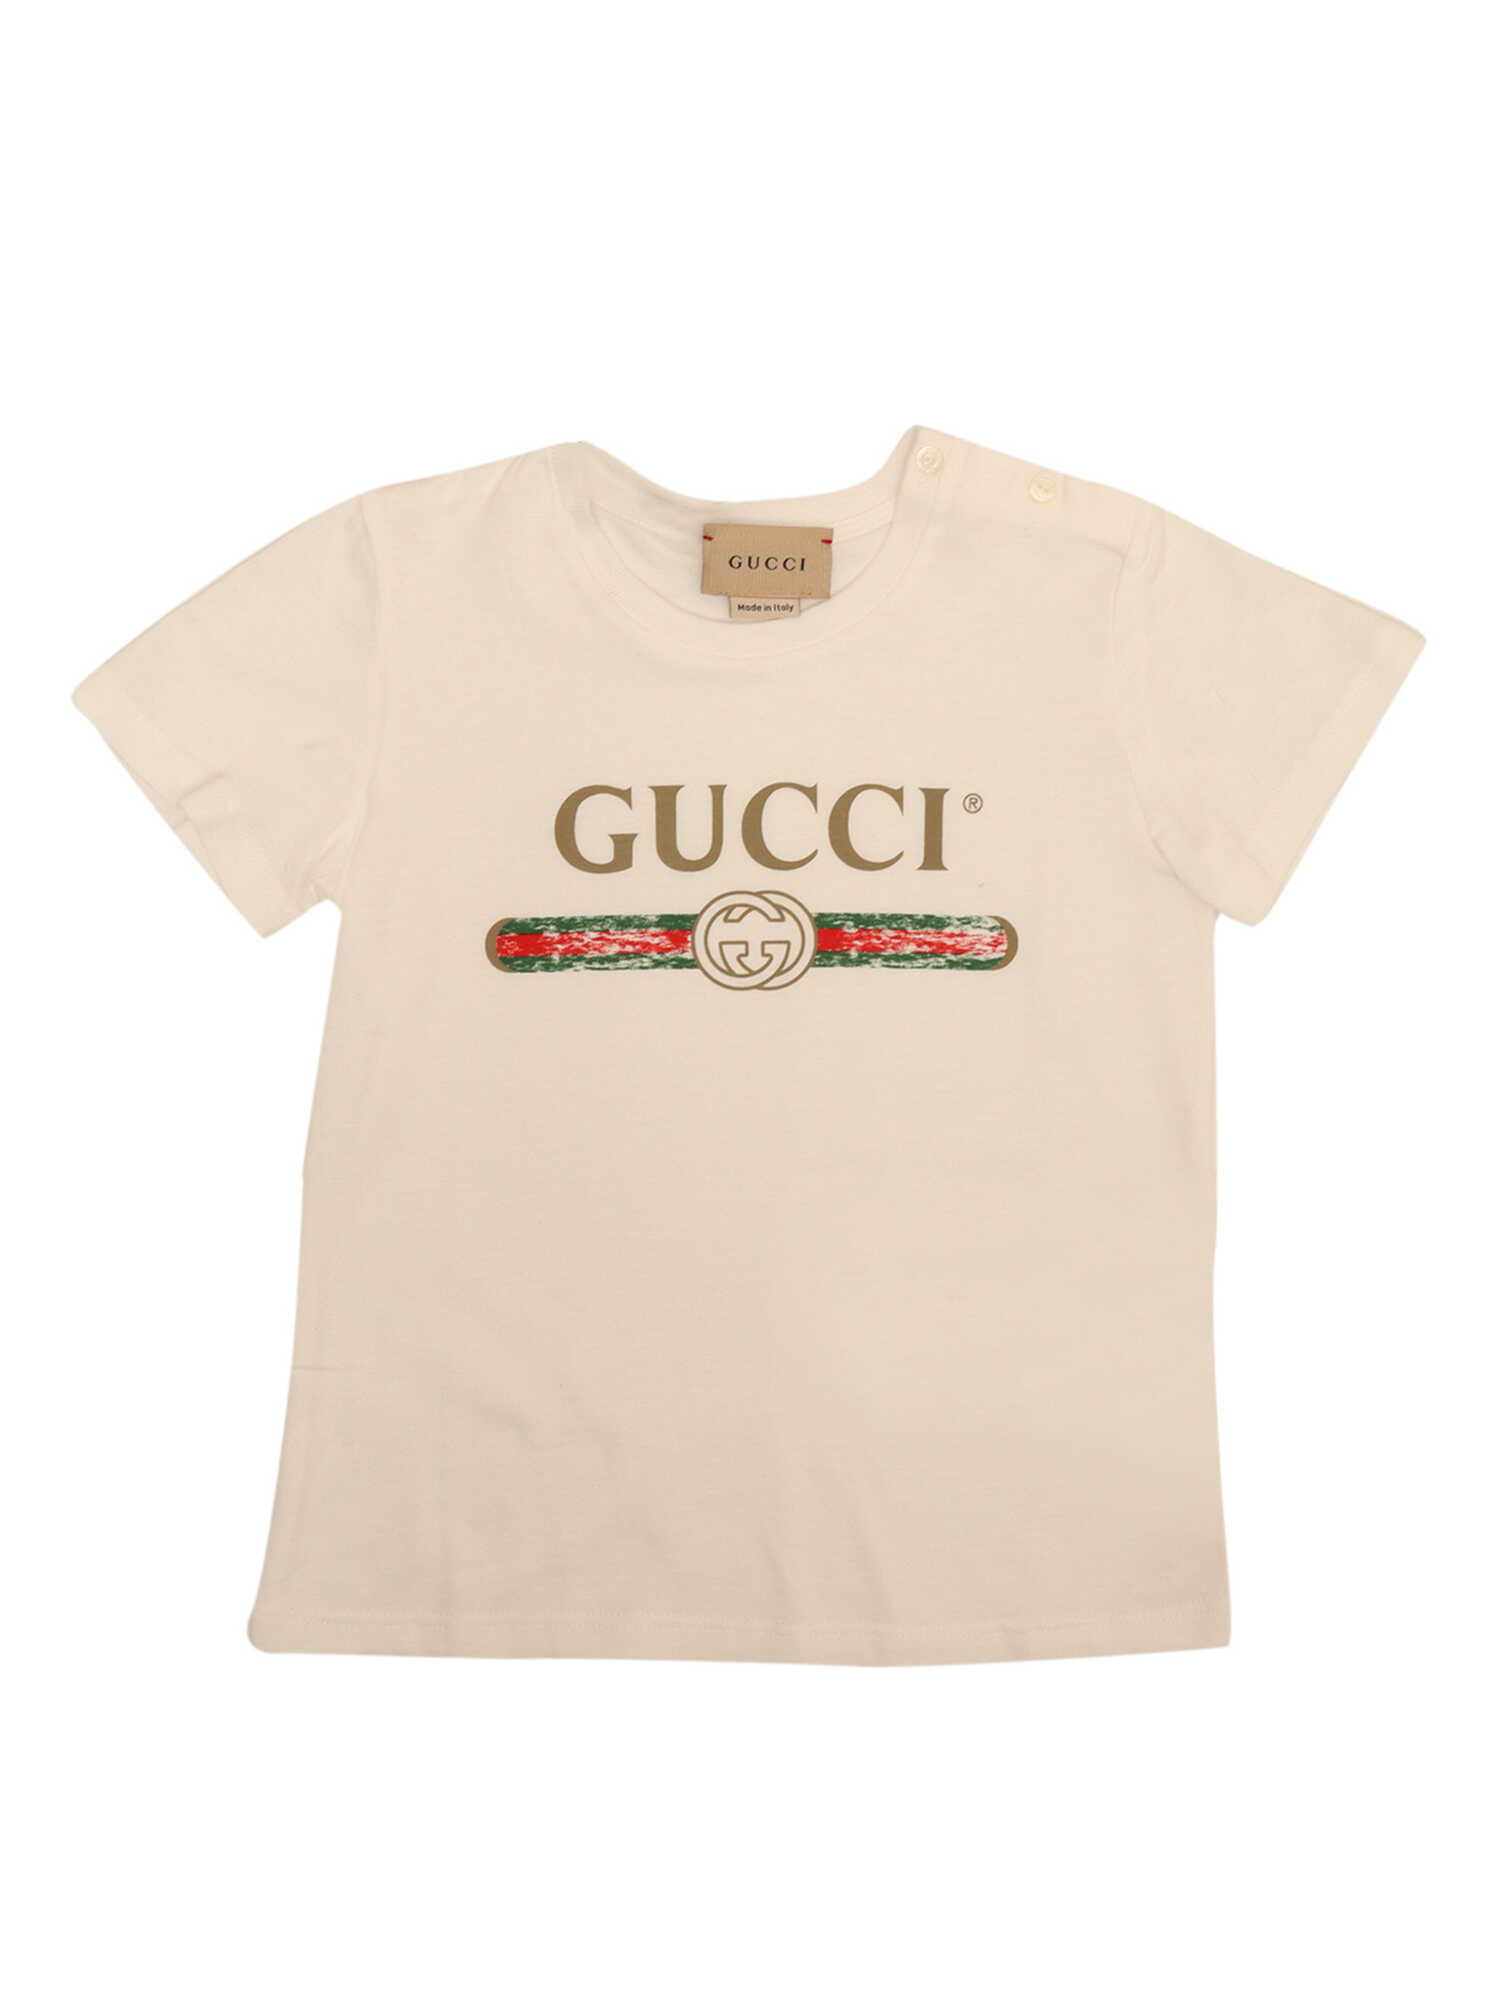 Gucci Vintage Logo T-Shirt White